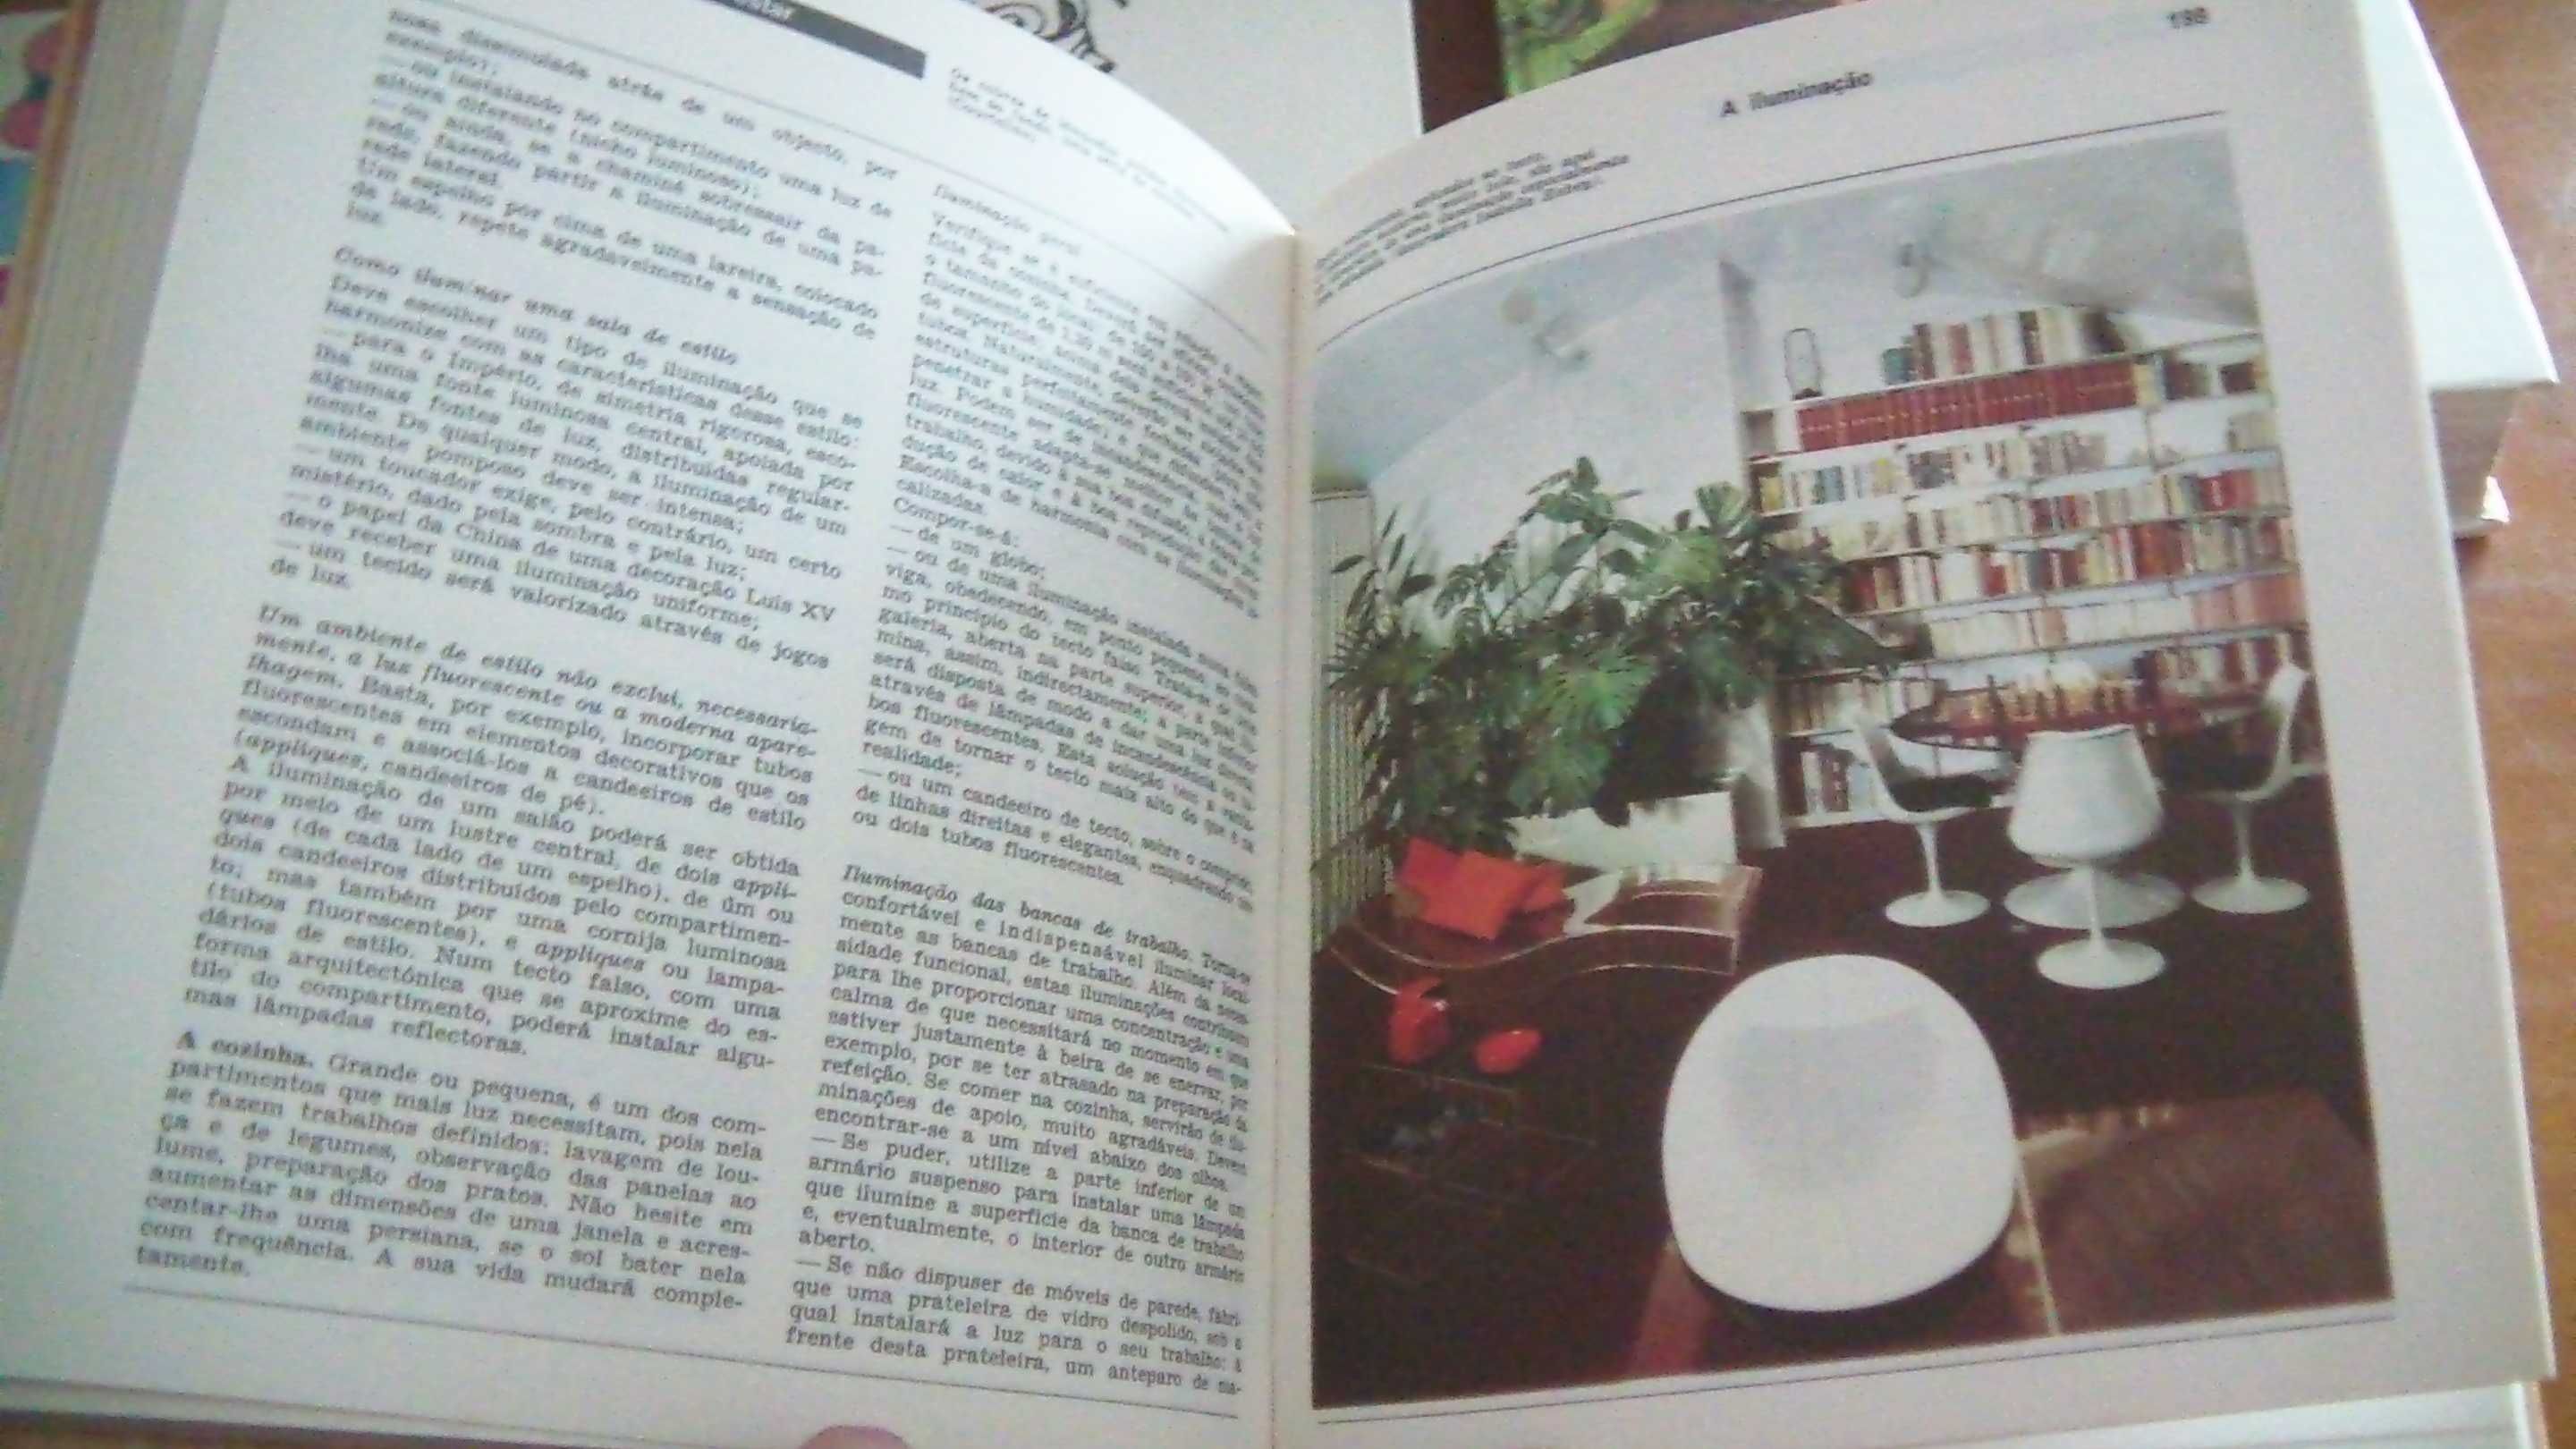 Enciclopédia Prática Verbo 8 volume, Verbo,1977 Completa e muito RARA